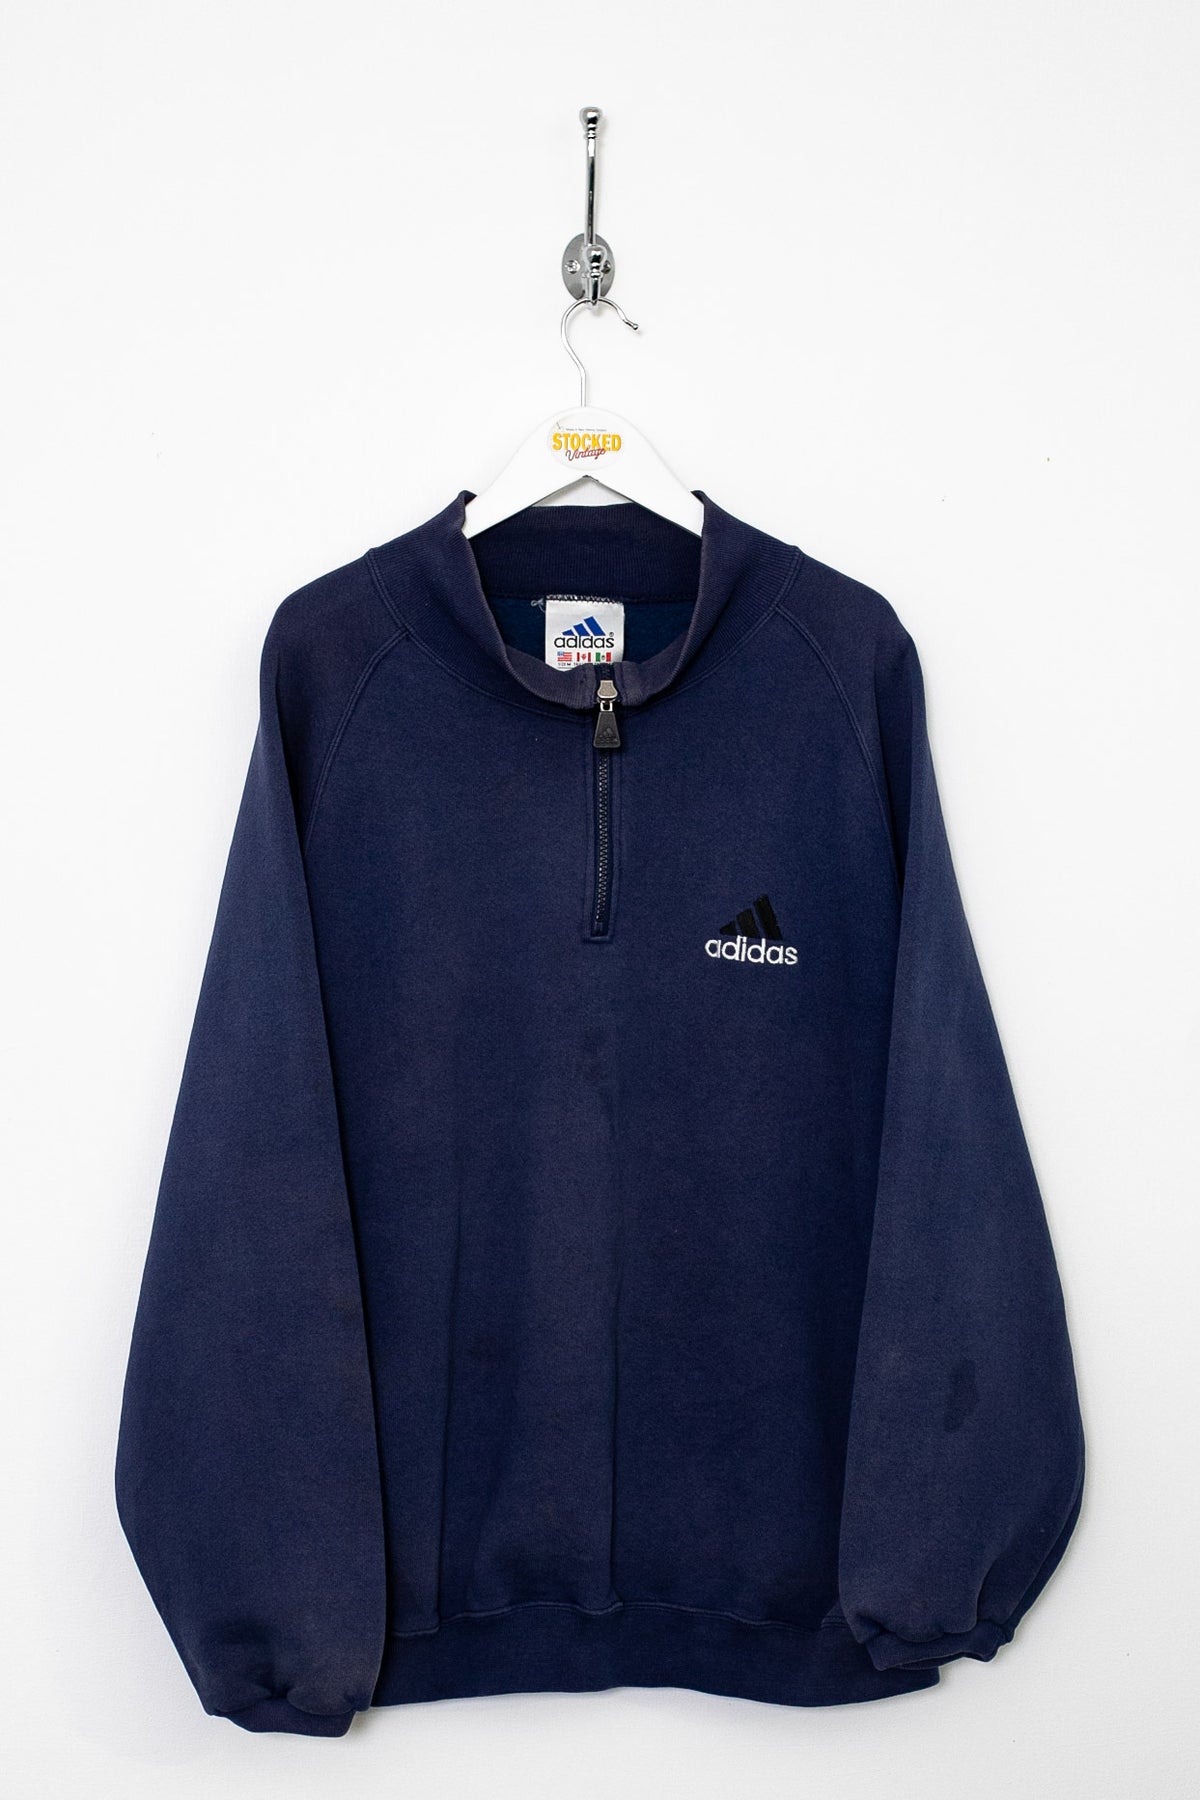 90s Adidas 1/4 Zip Sweatshirt (M)